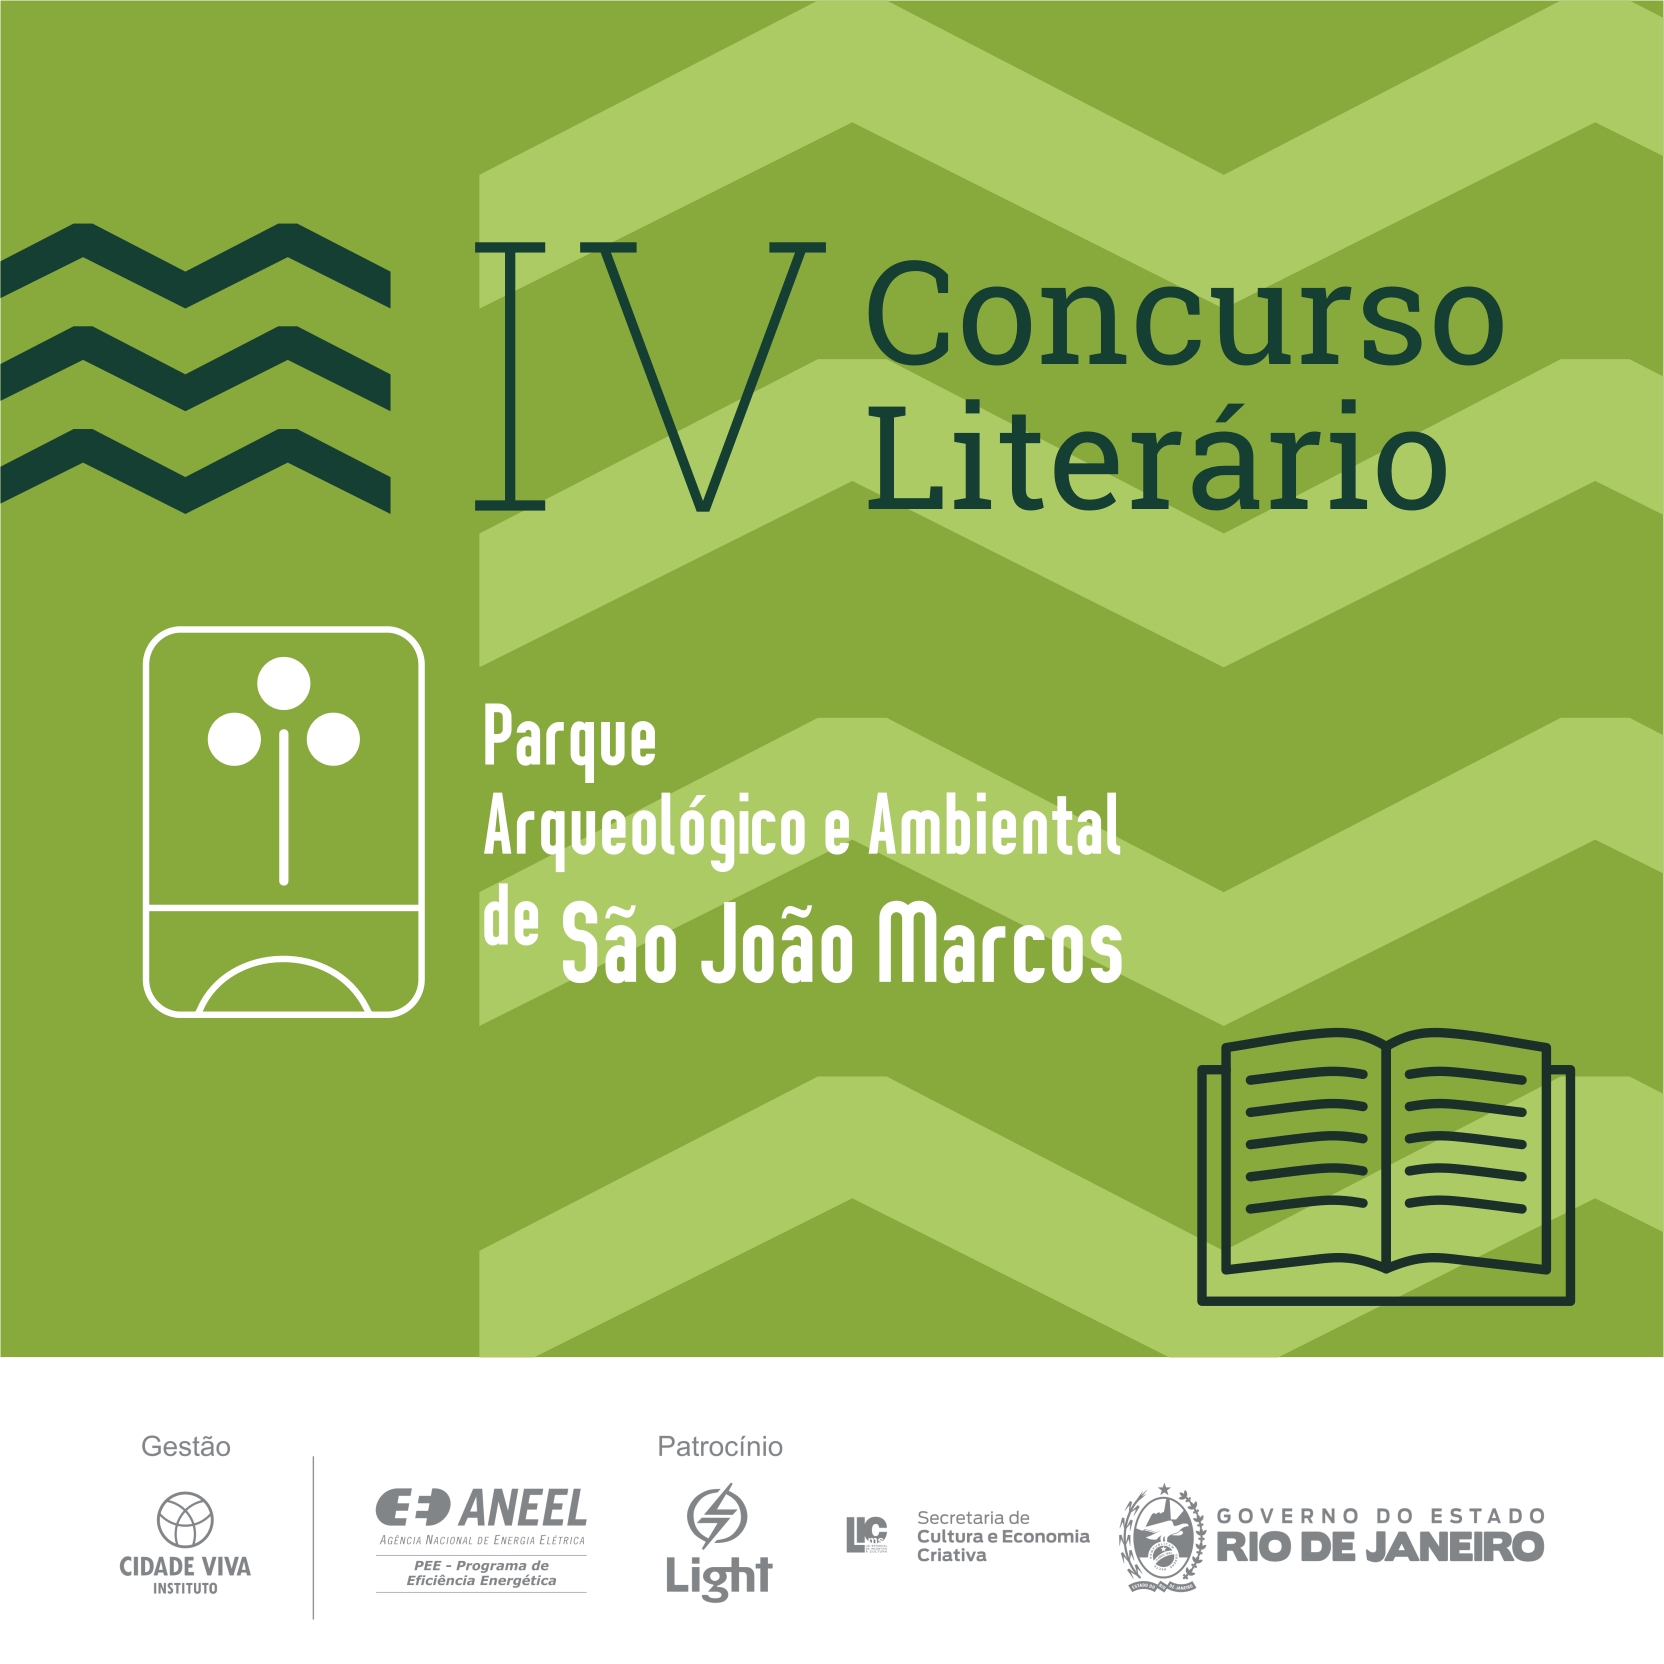 Concurso Parque 4 instagram - Parque Arqueológico e Ambiental de São João Marcos abre inscrições para o seu IV Concurso Literário